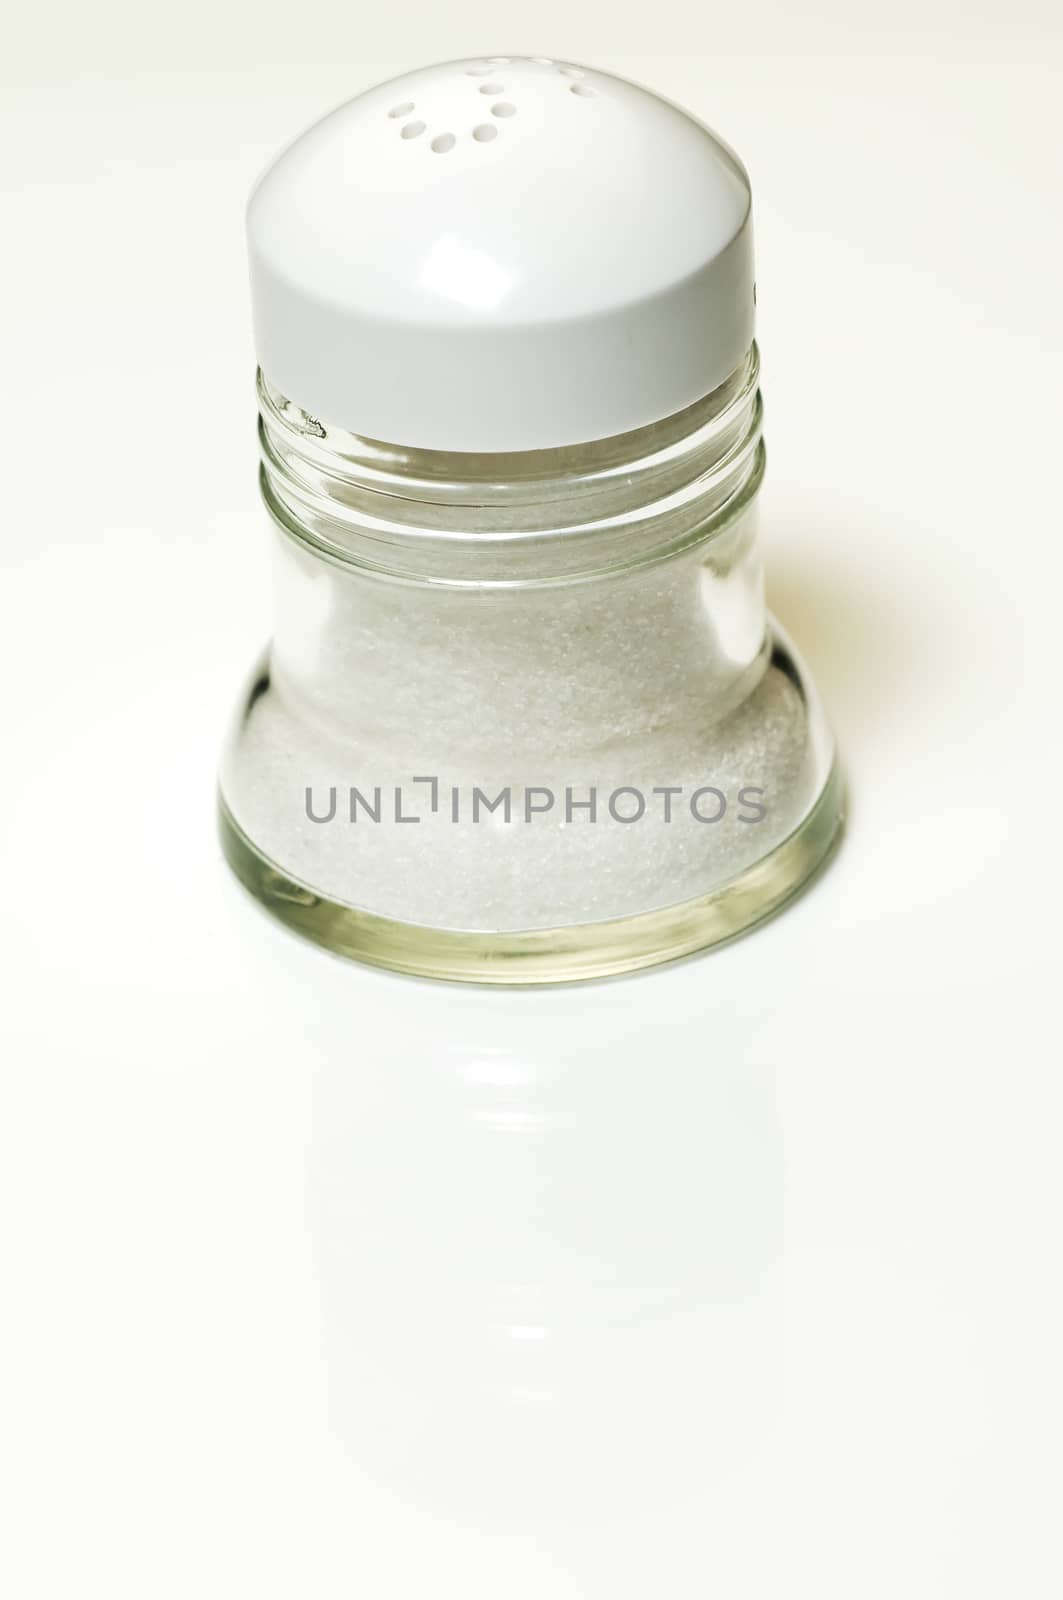 salt shaker by Jochen